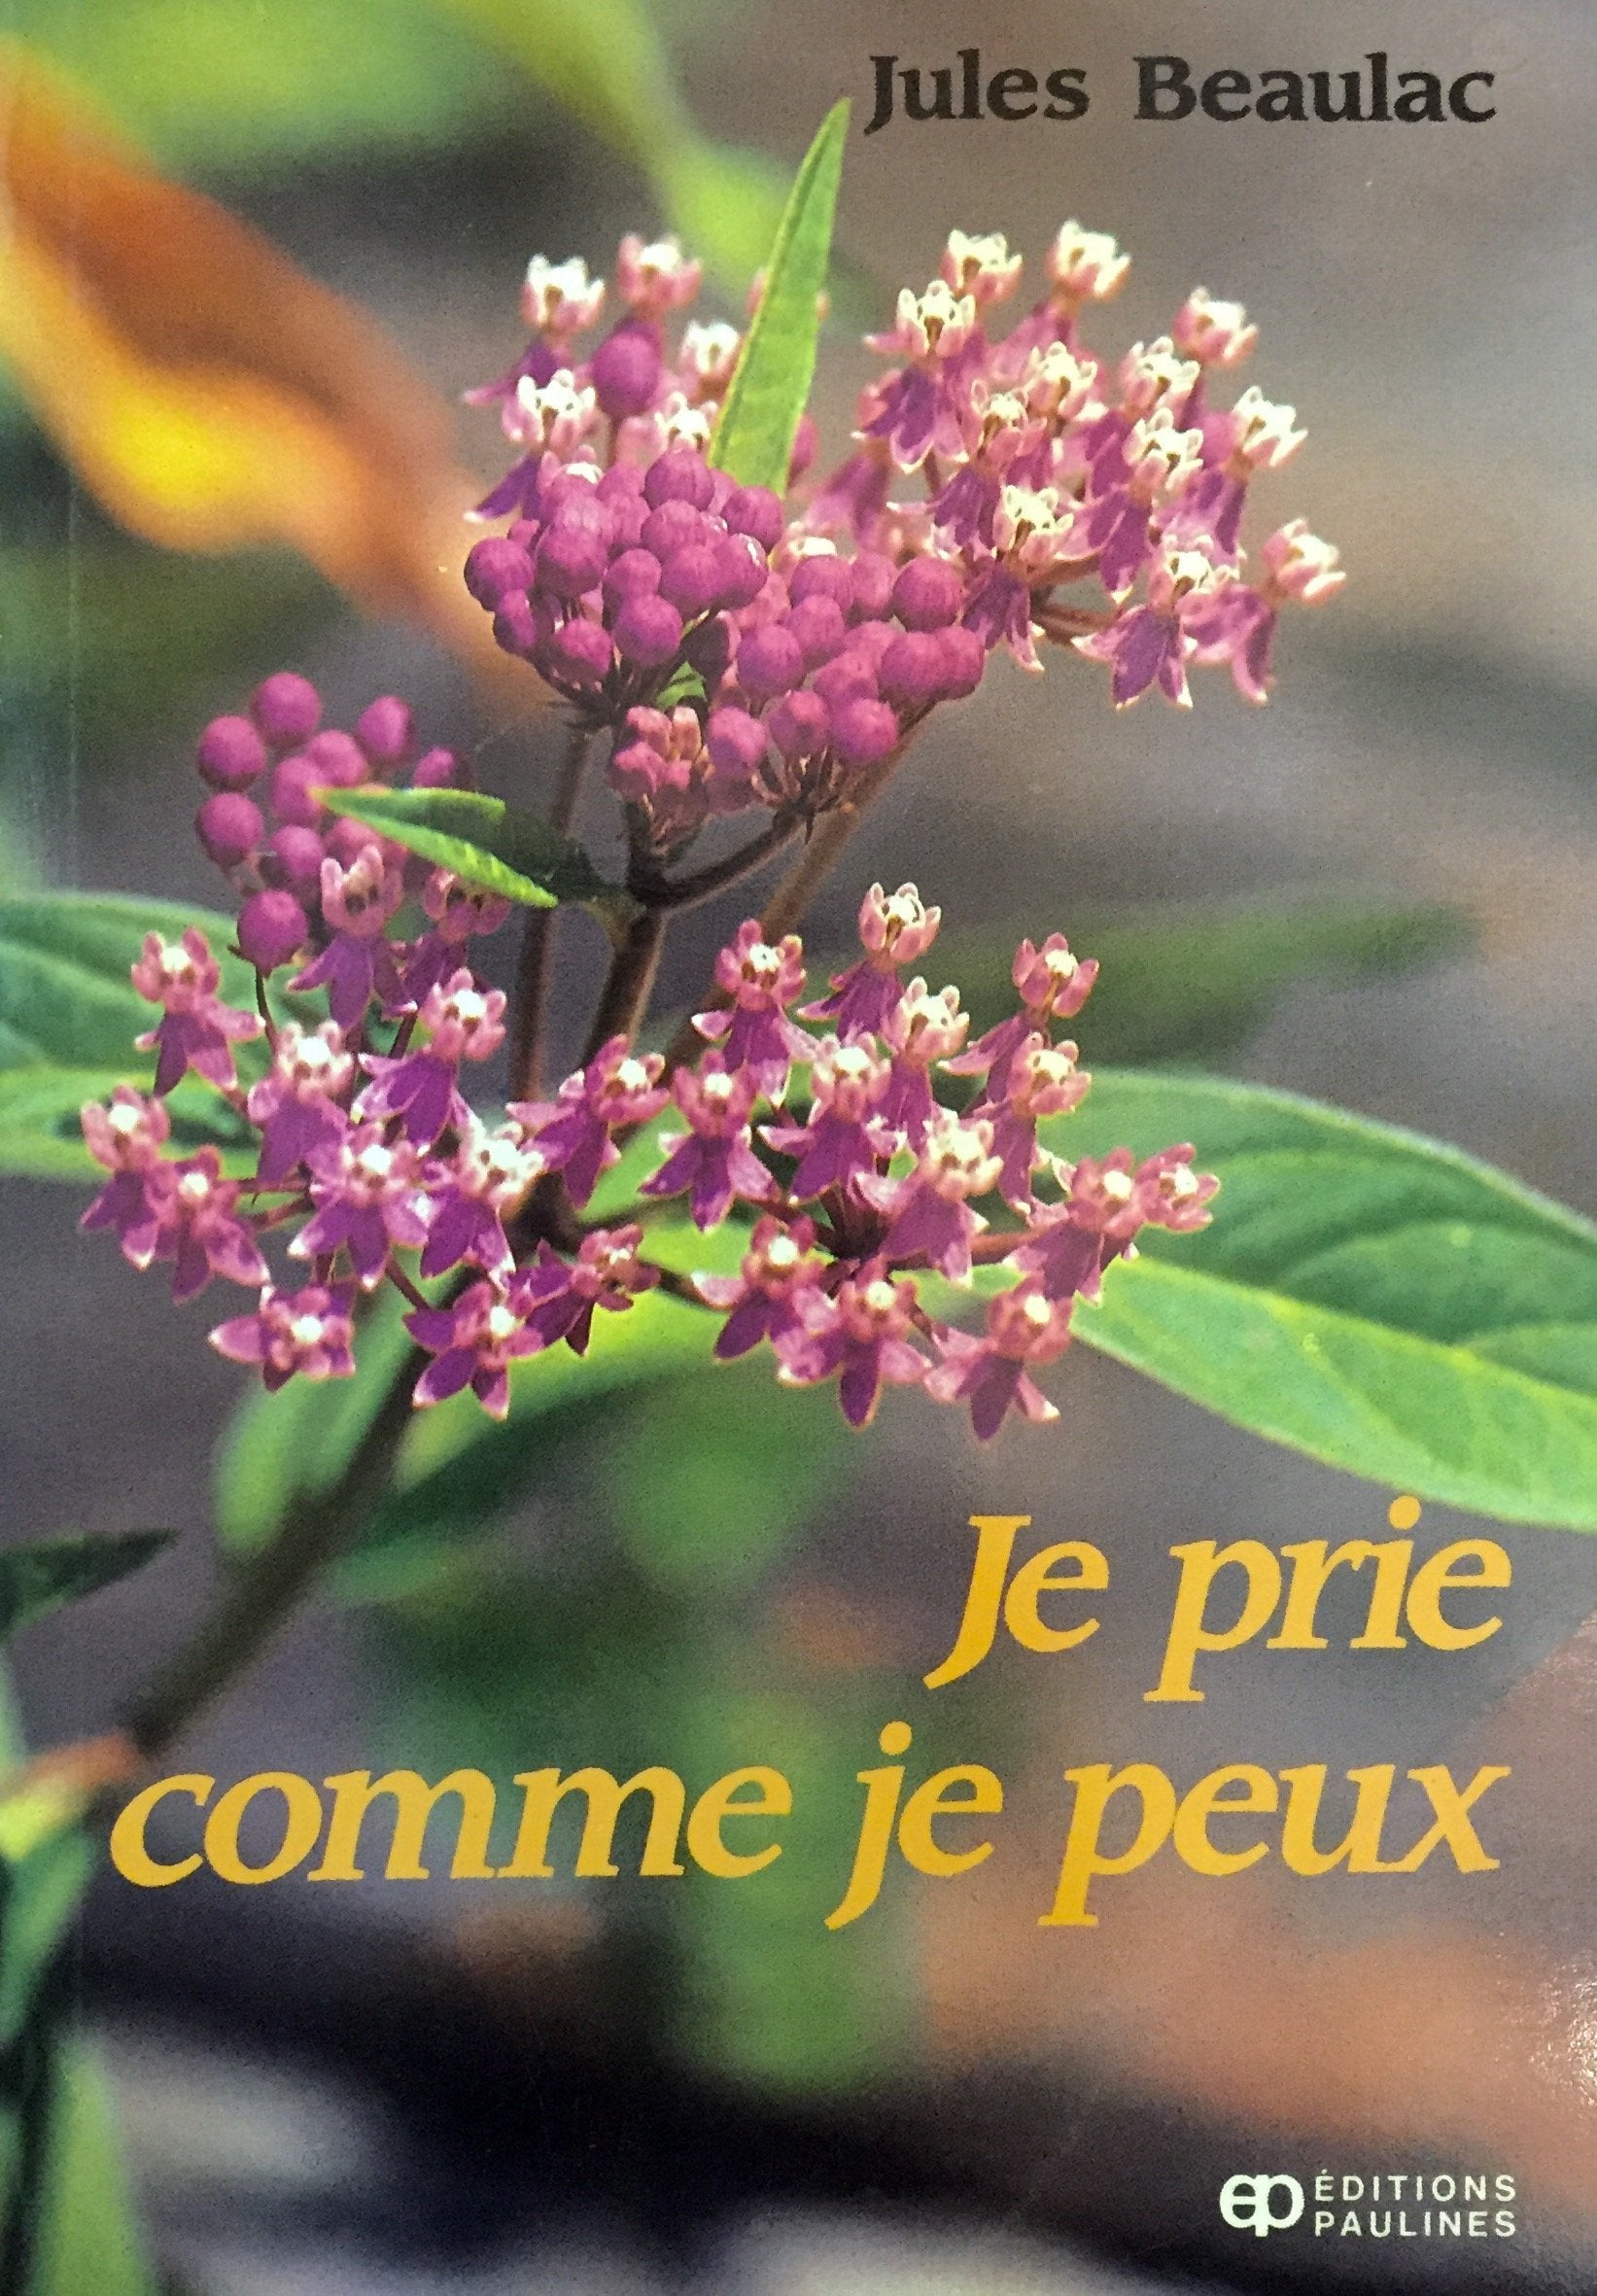 Livre ISBN 2890391574 Je prie comme je peux (Jules Beaulac)